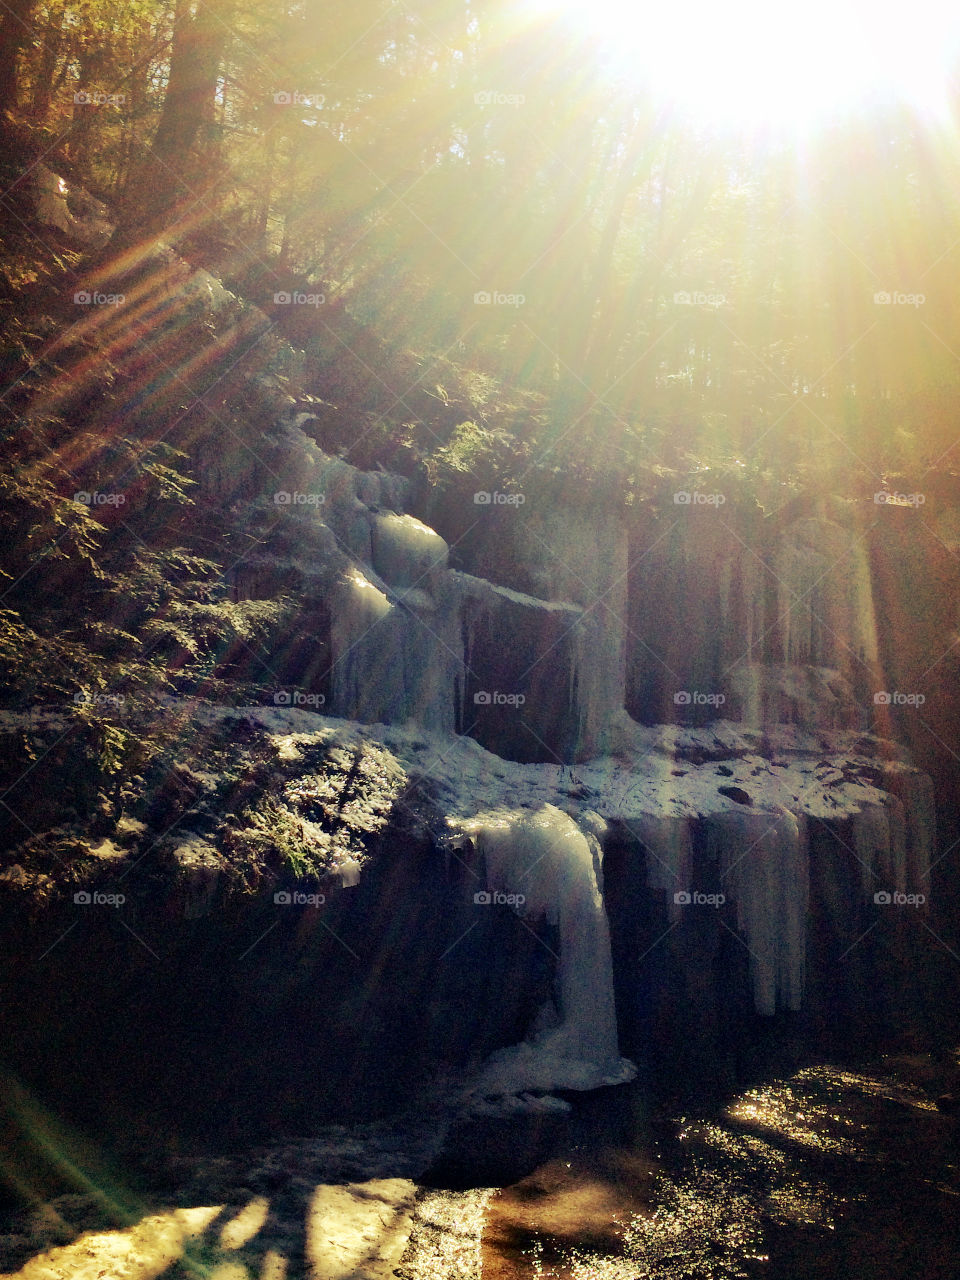 Sun rays in waterfall